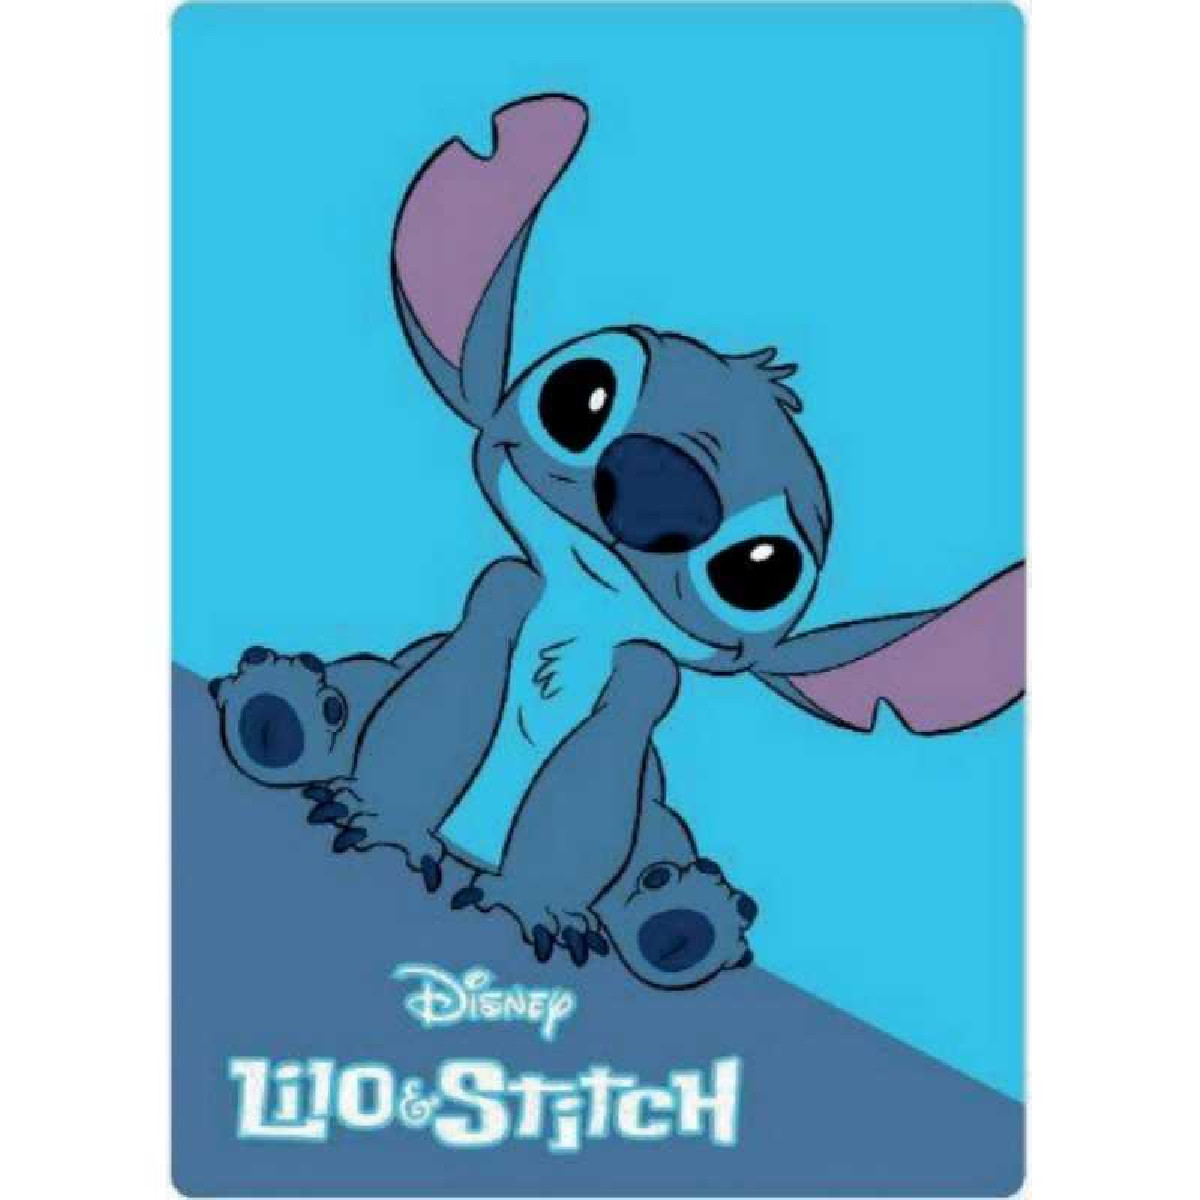 InsideDlpCastle on X: 🛍️Le plaid Stitch, pourrait bien vous servir, en  attendant prochainement dans le froid, Disney Illumination 😅❄️ Prix: 30€  #DisneylandParis  / X